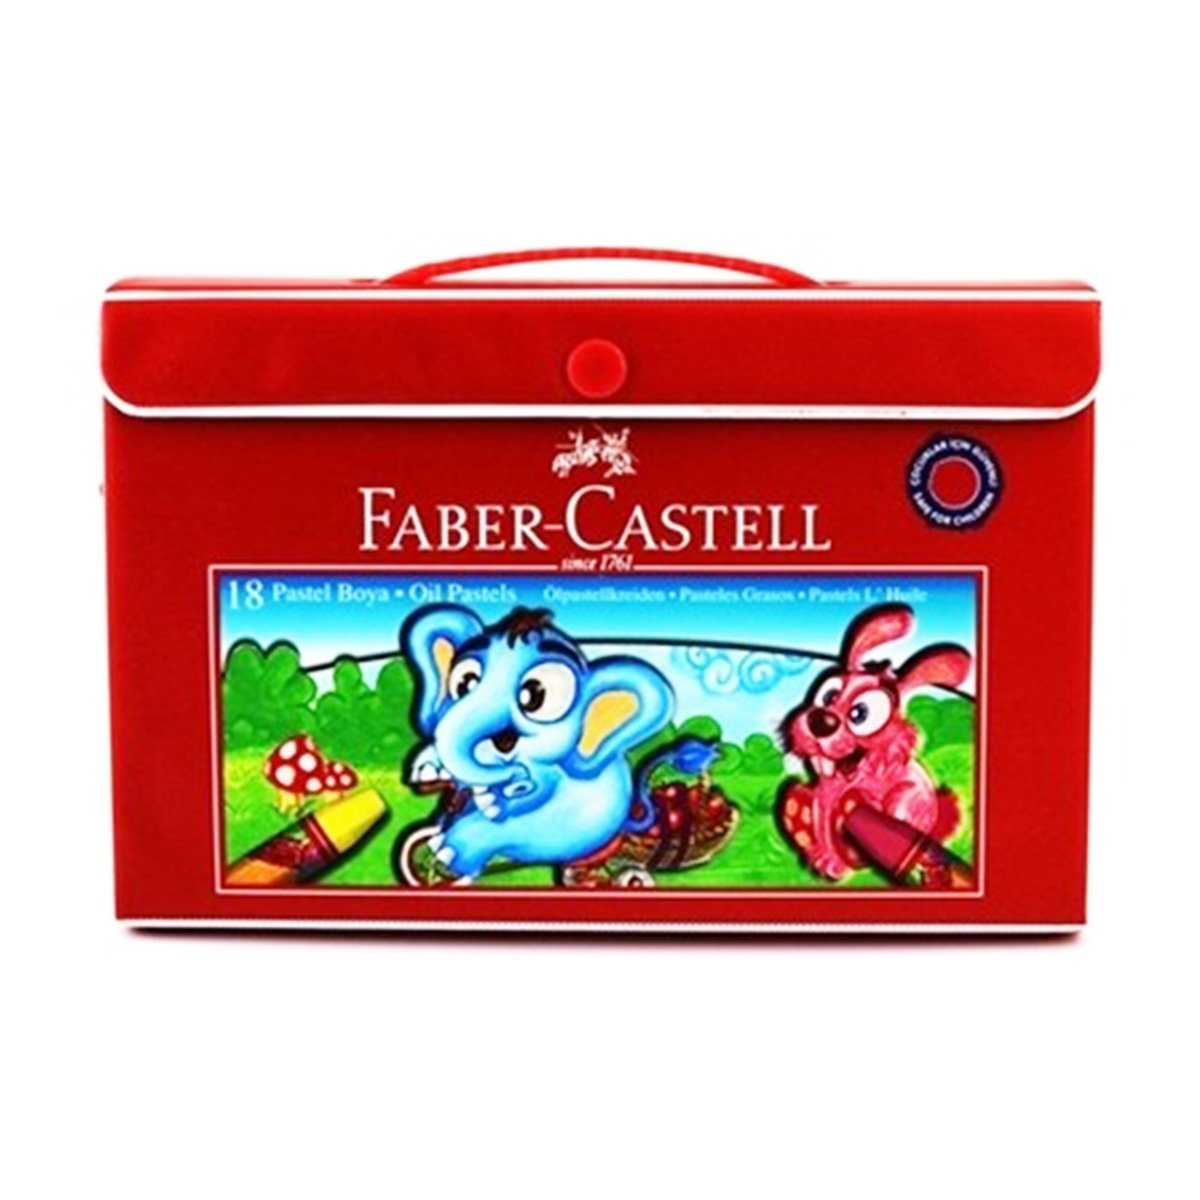 Faber Castell pastel 851 18 renk plastik çanta 125119 | ŞEKERCİOĞLU